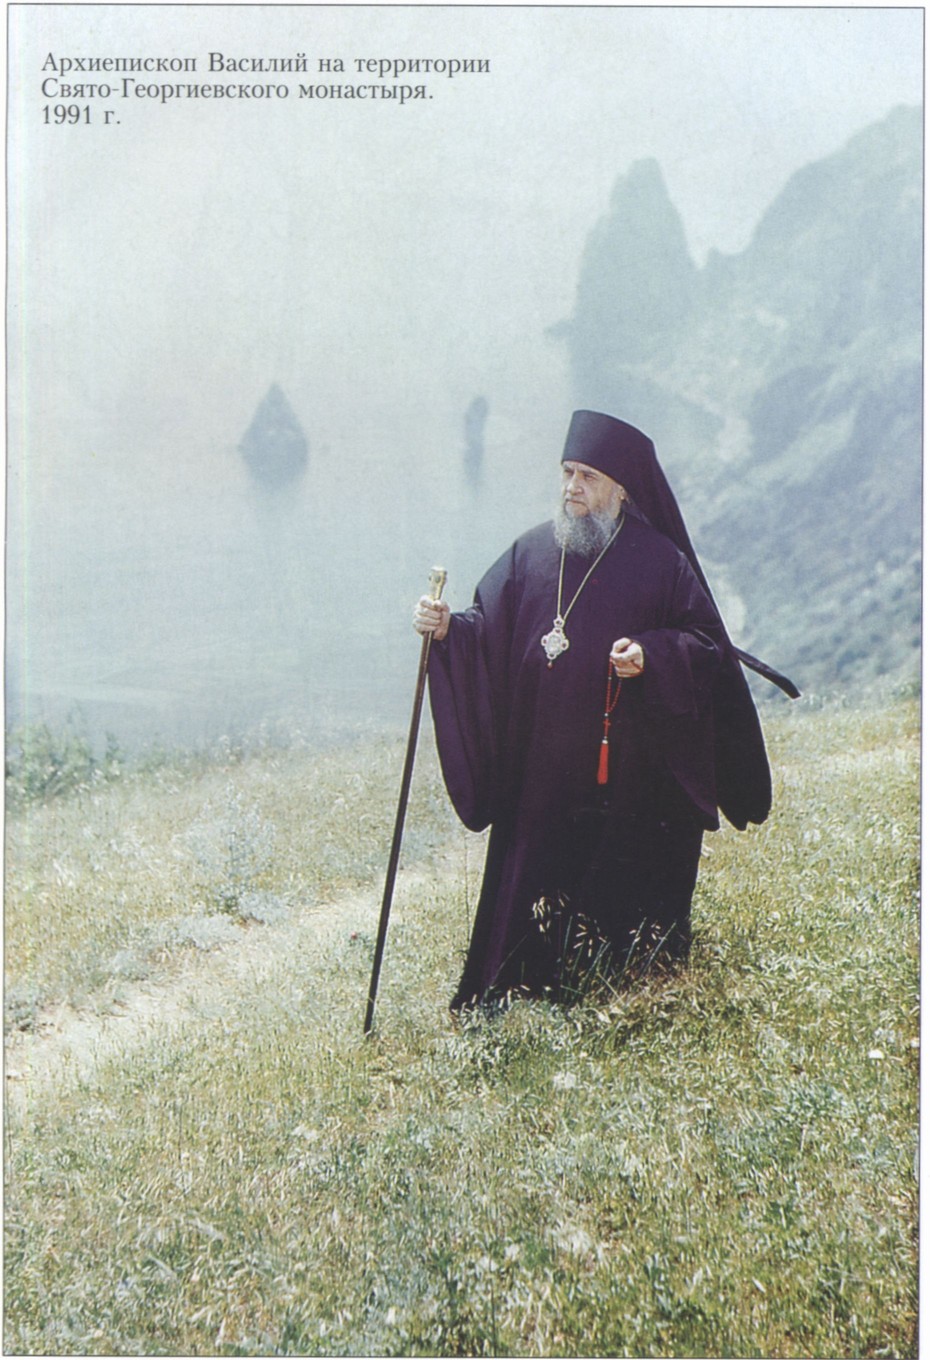 Архиепископ Василий на территории Свято-Георгиевского монастыря. 1991 г